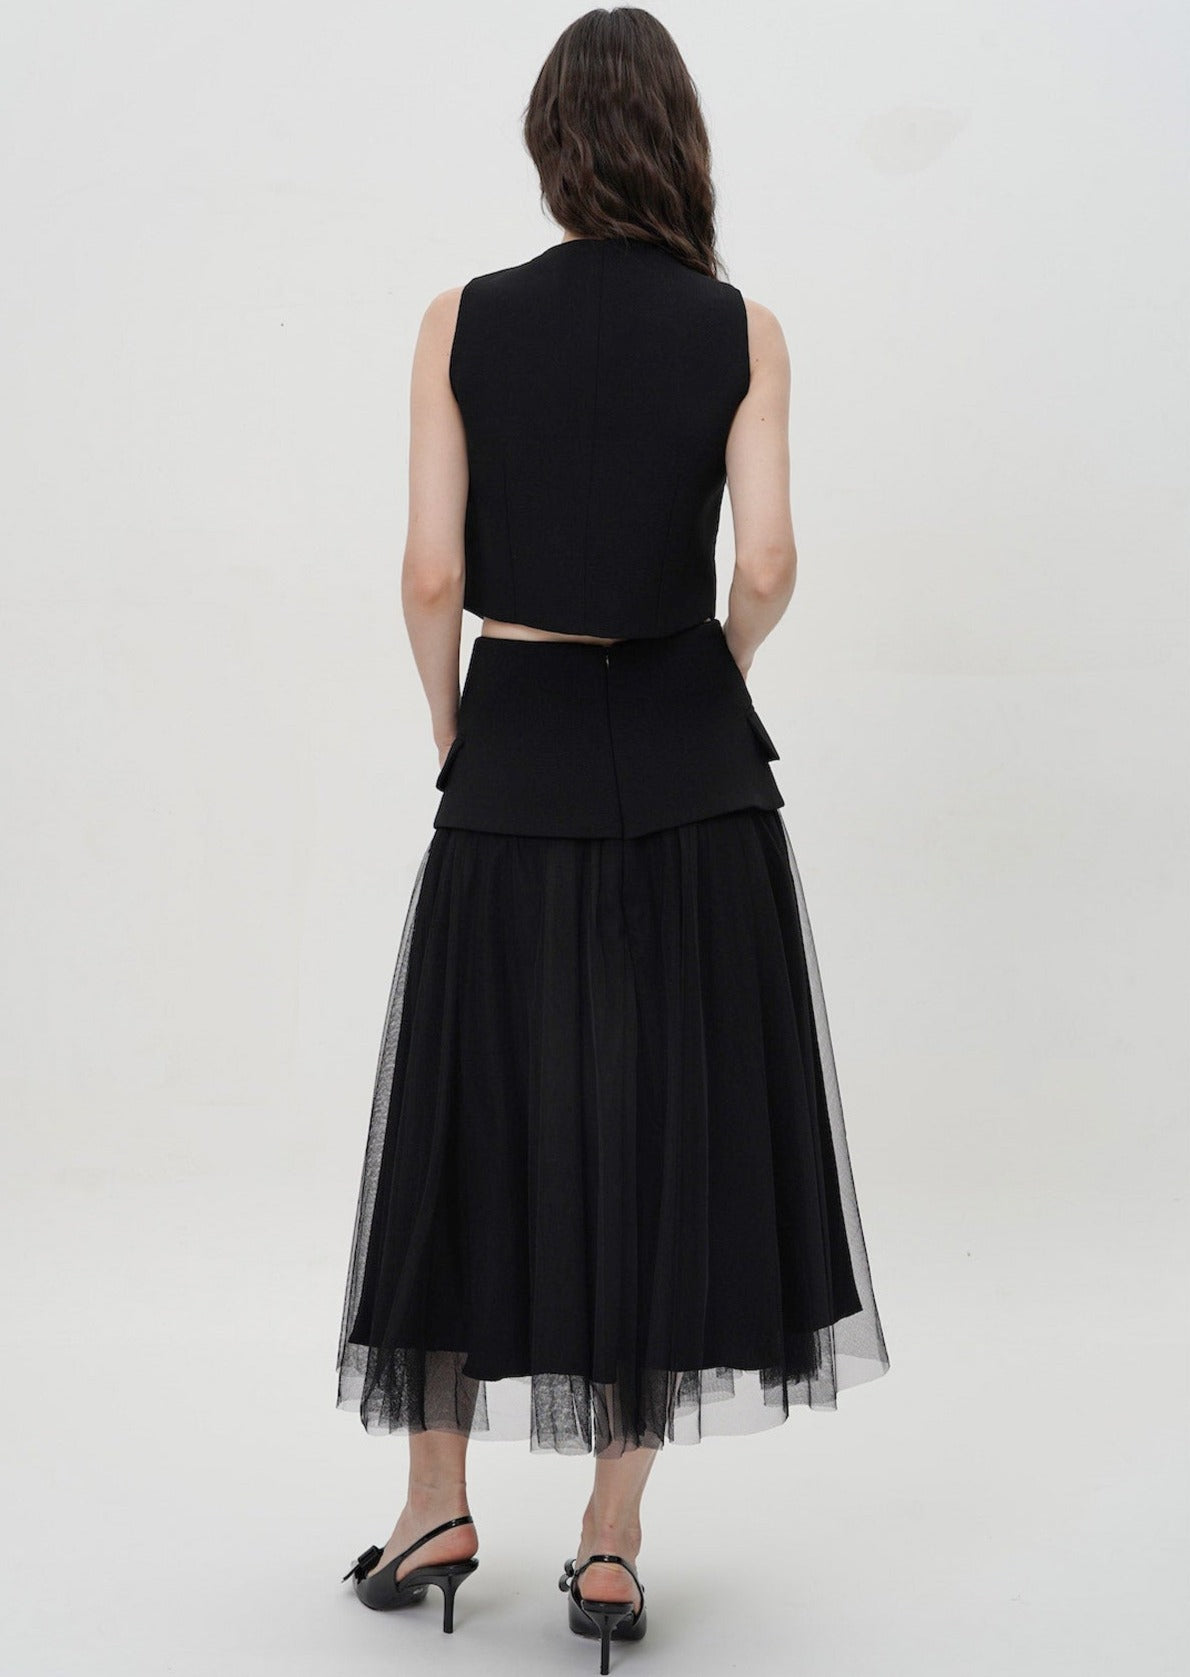 Jiva Skirt in Black (Back in Stock)